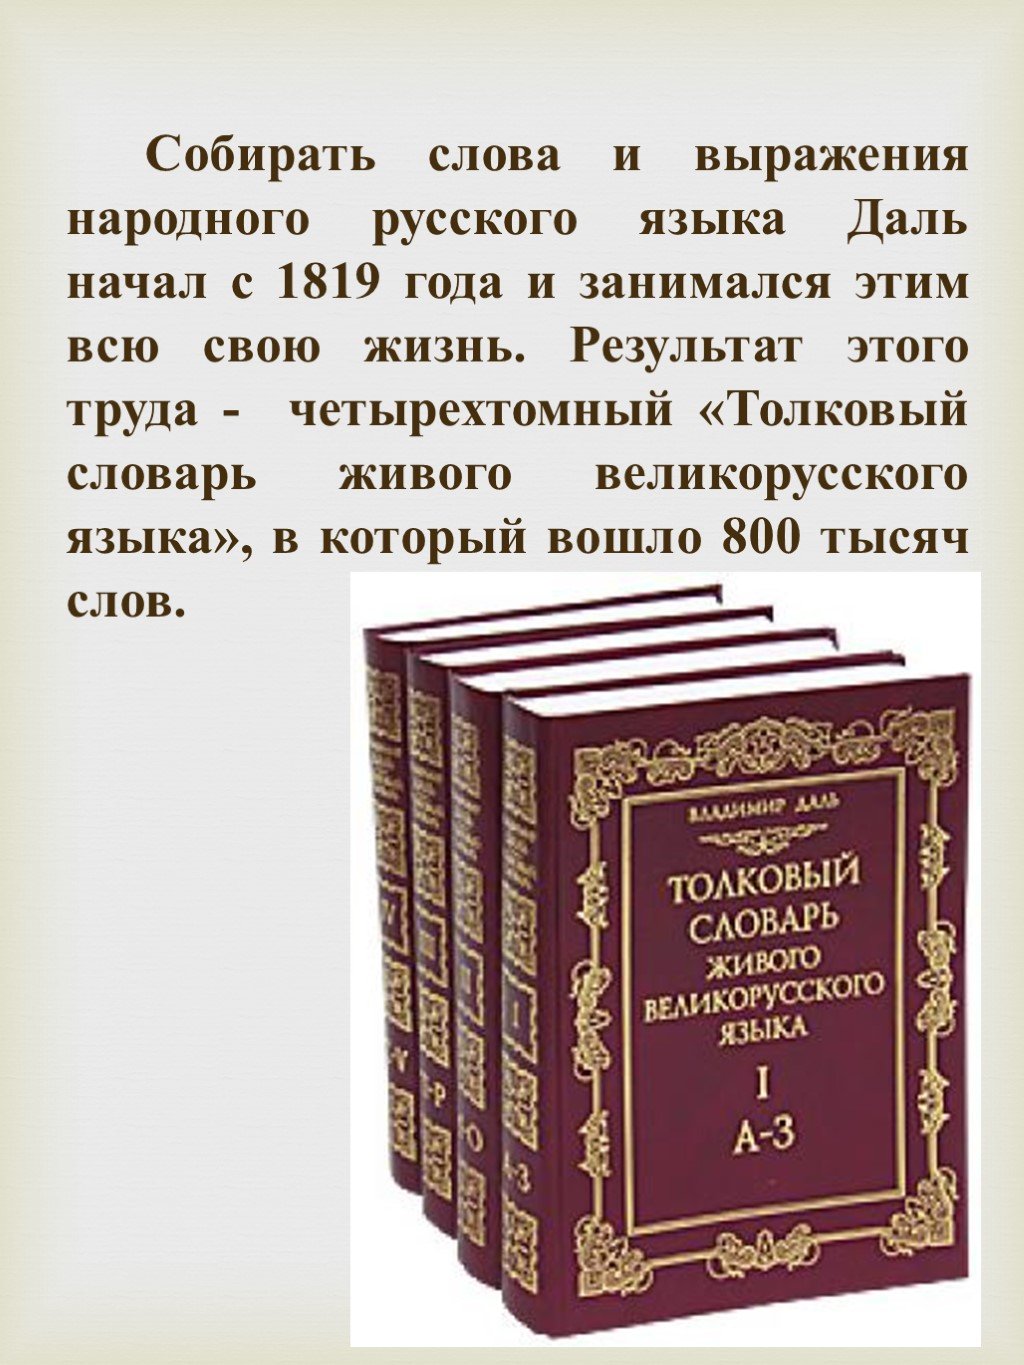 Четырехтомный «Толковый словарь живого великорусского языка»